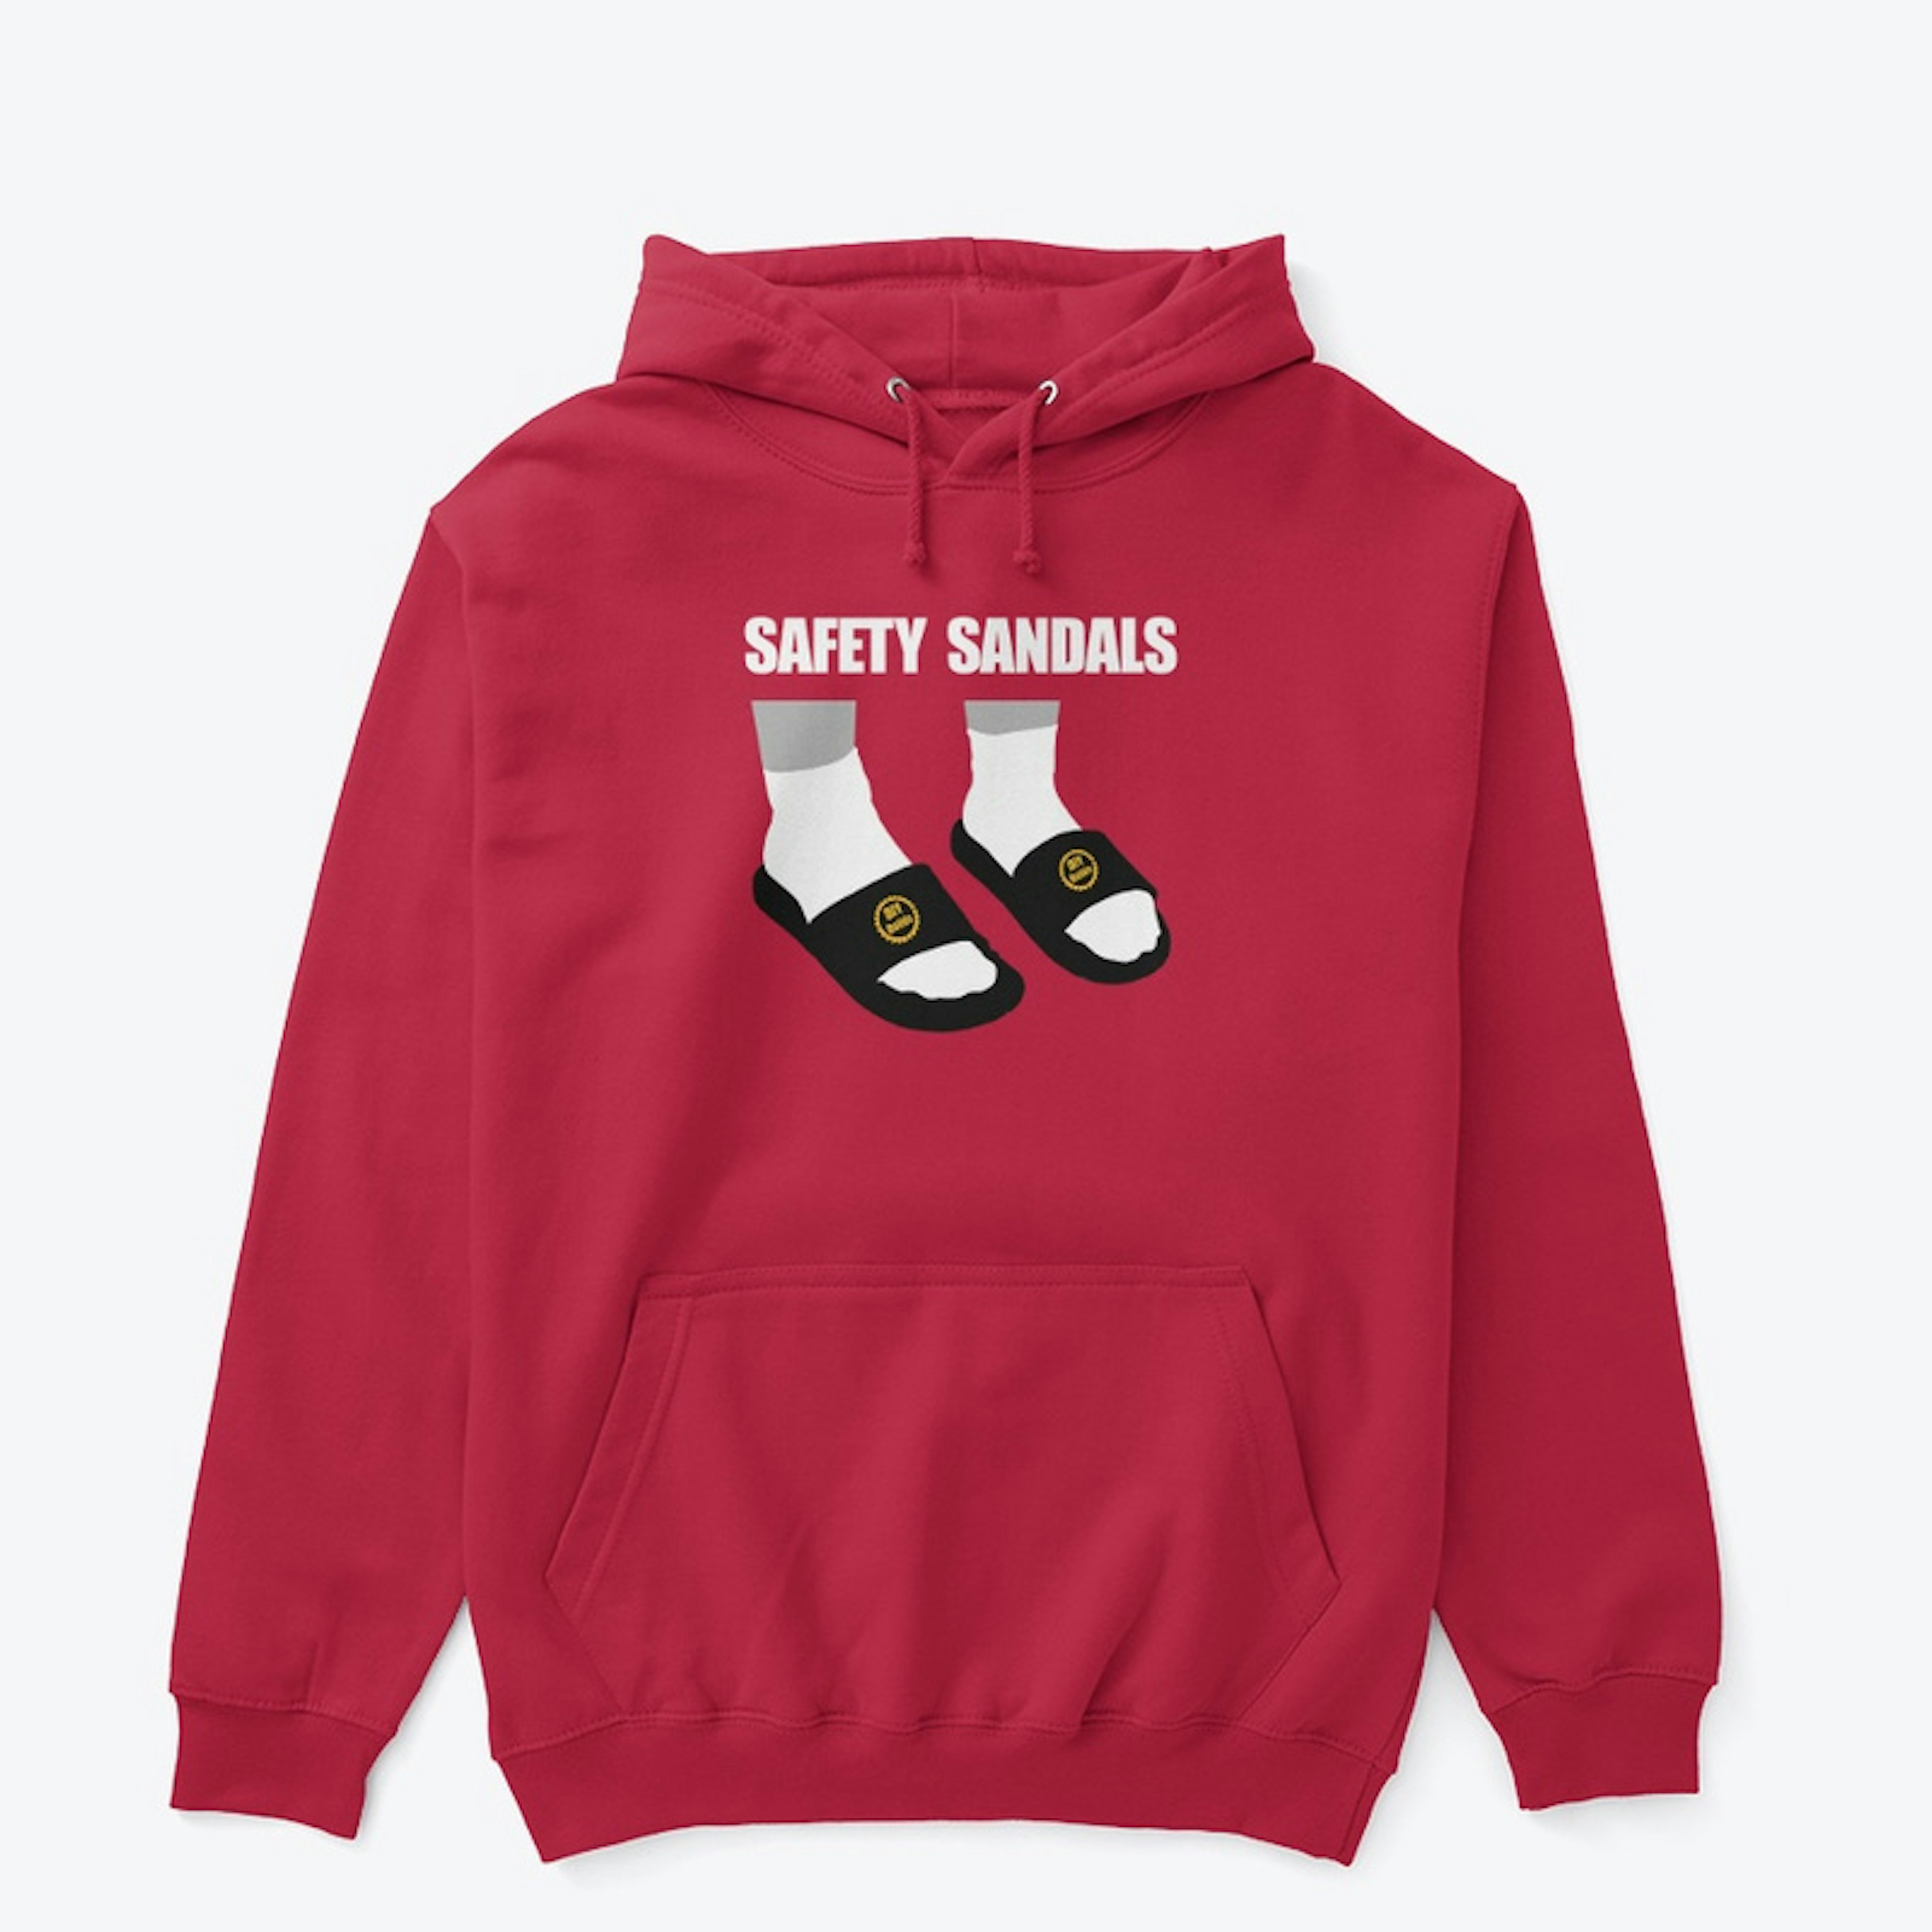 Safety Sandals